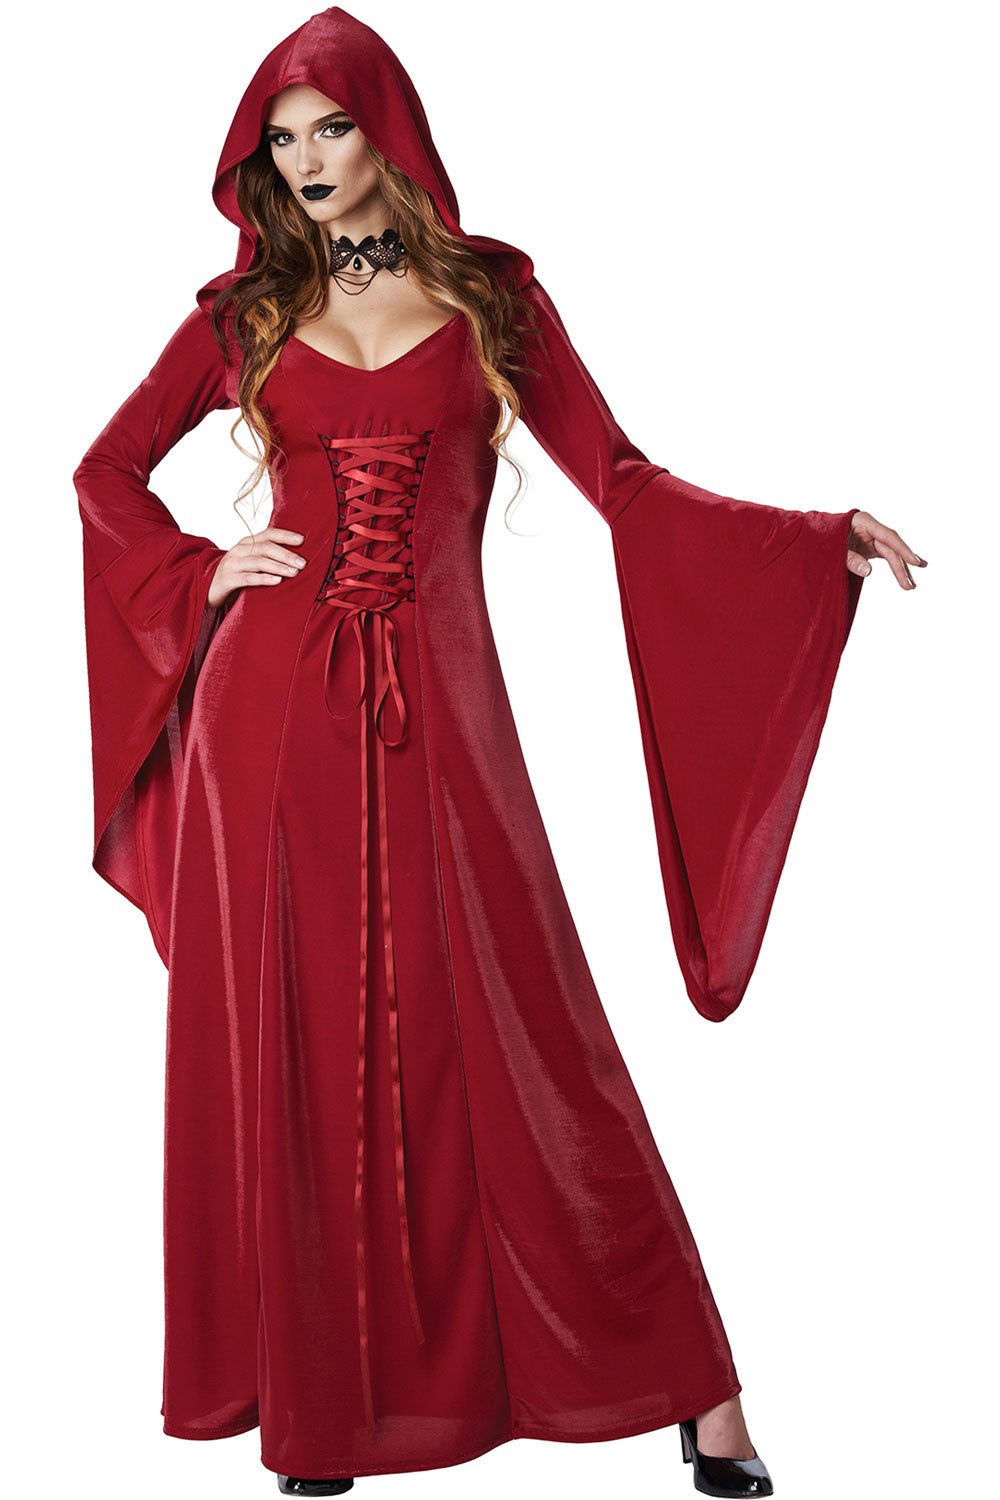 Crimson Robe / Adult California Costume 5021-149